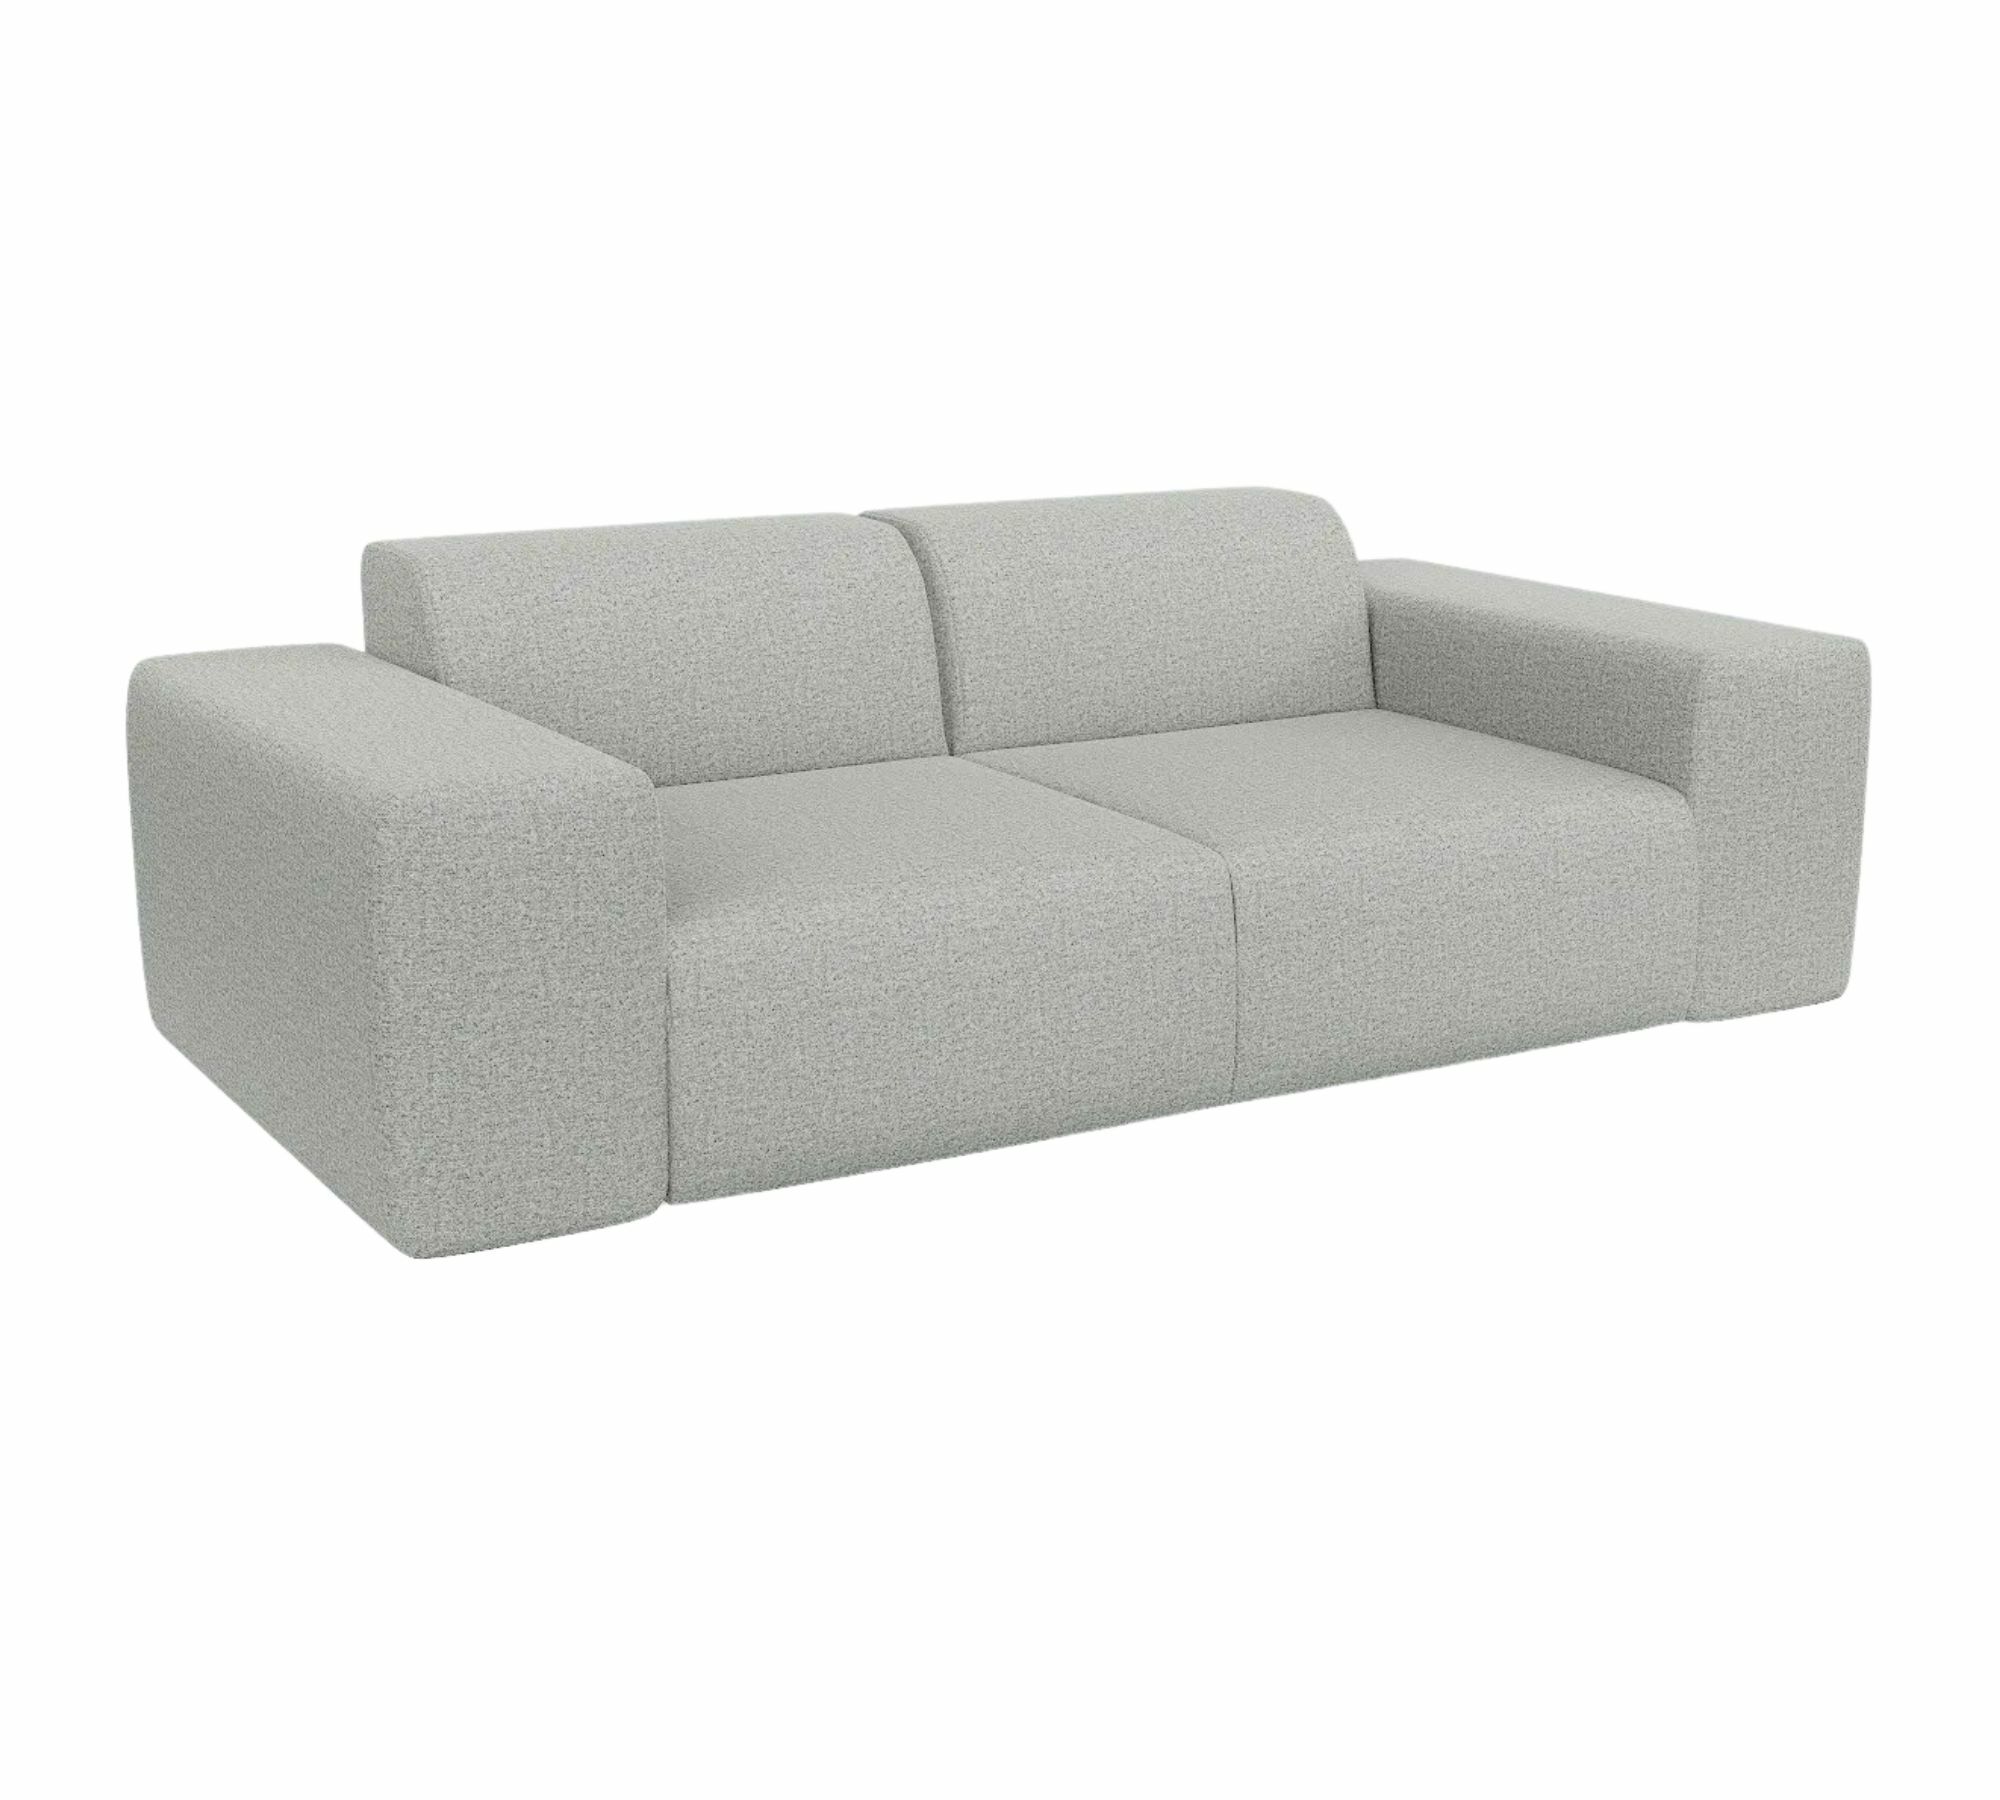 Pyllow Sofa 2-Sitzer Kiesgrau meliert 100% natürliche Wolle 0